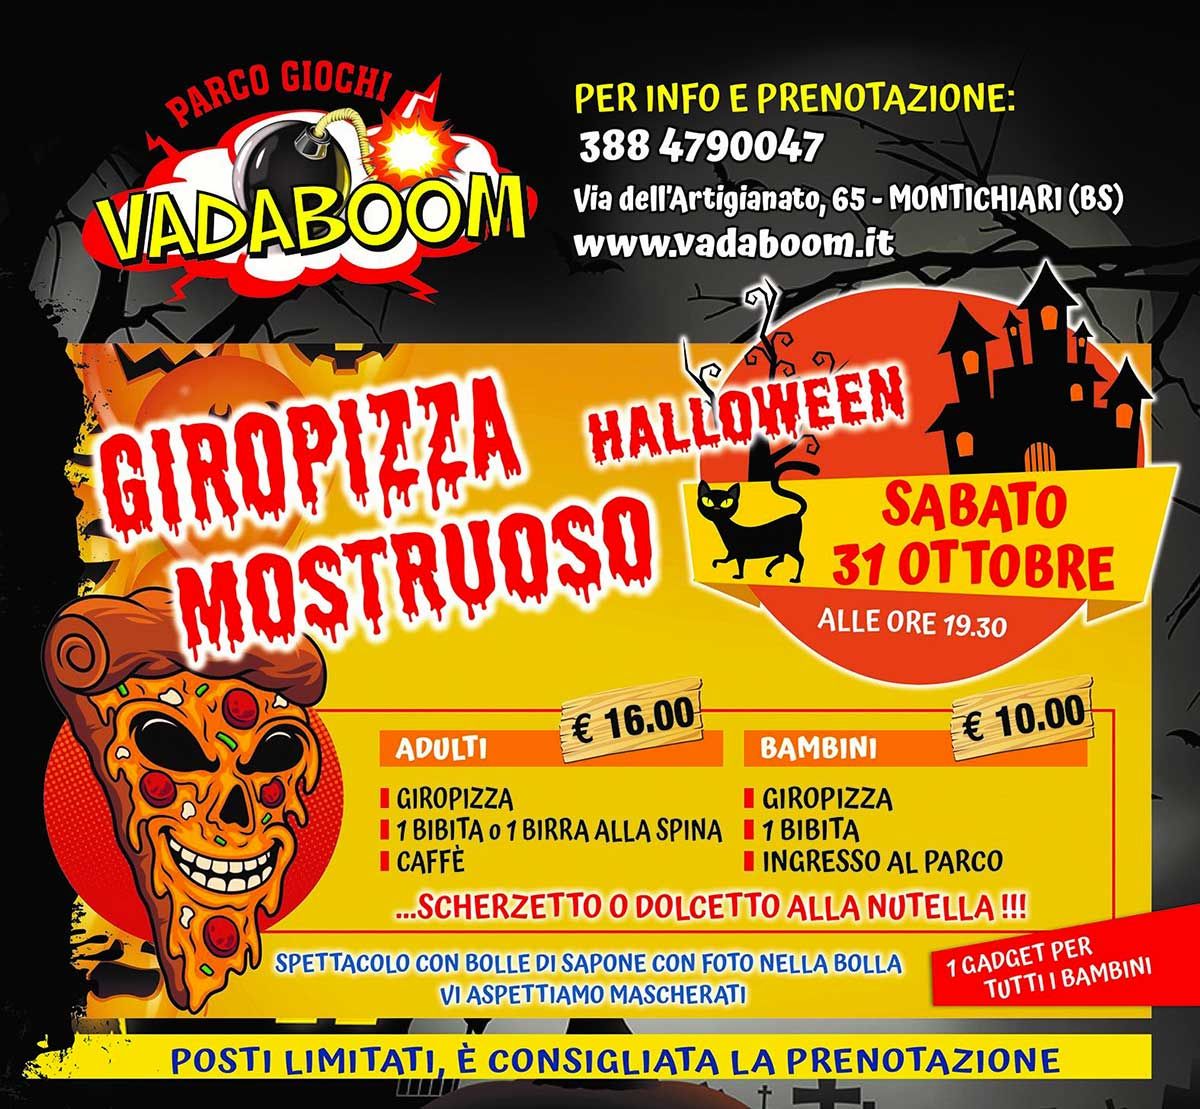 giropizza-mostruoso-vadaboom-halloween-2020